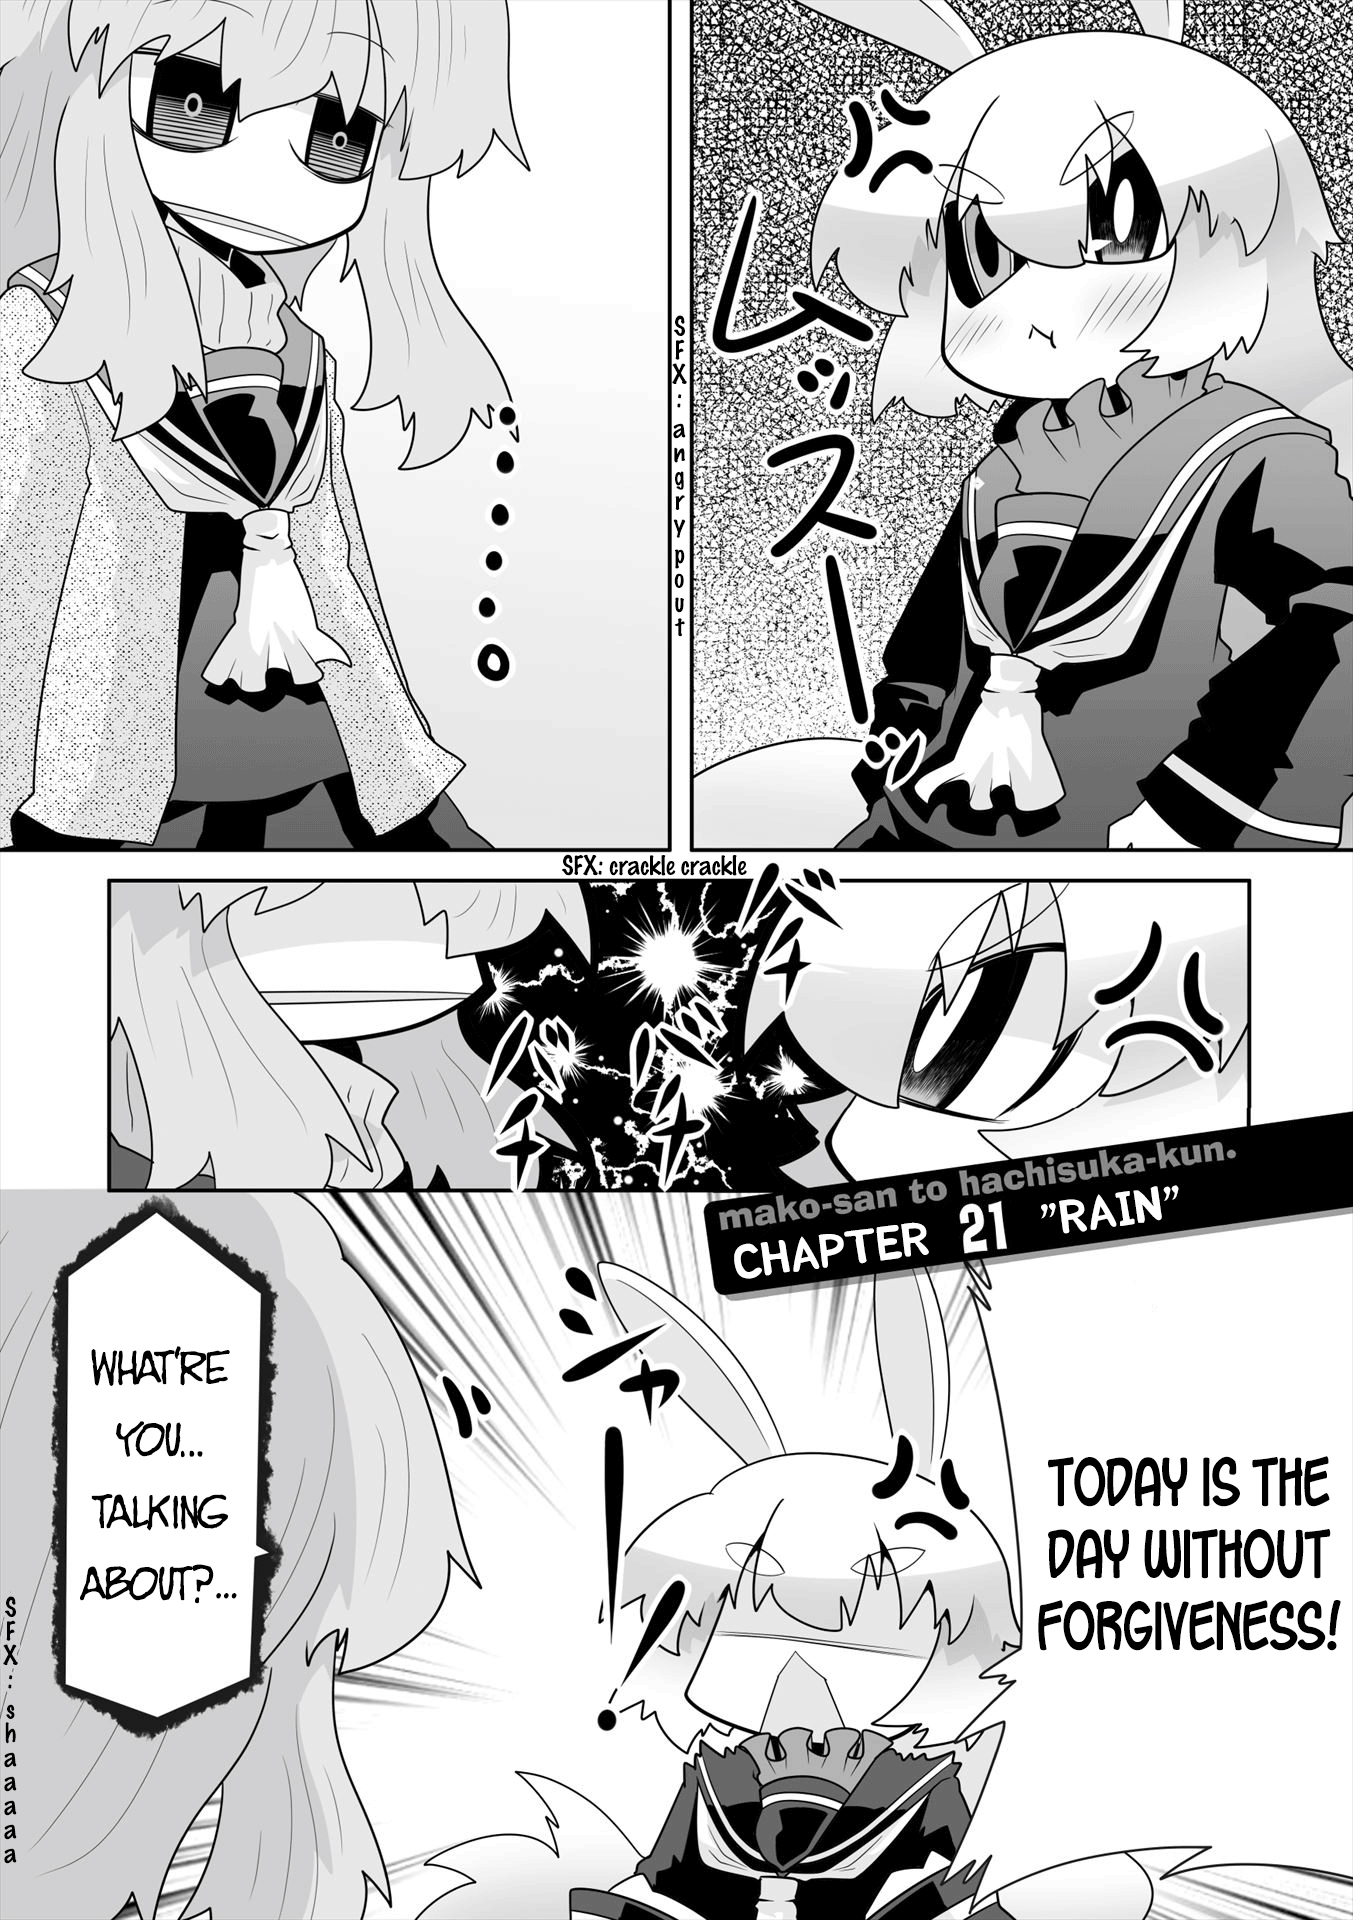 Mako-San To Hachisuka-Kun. - Page 1